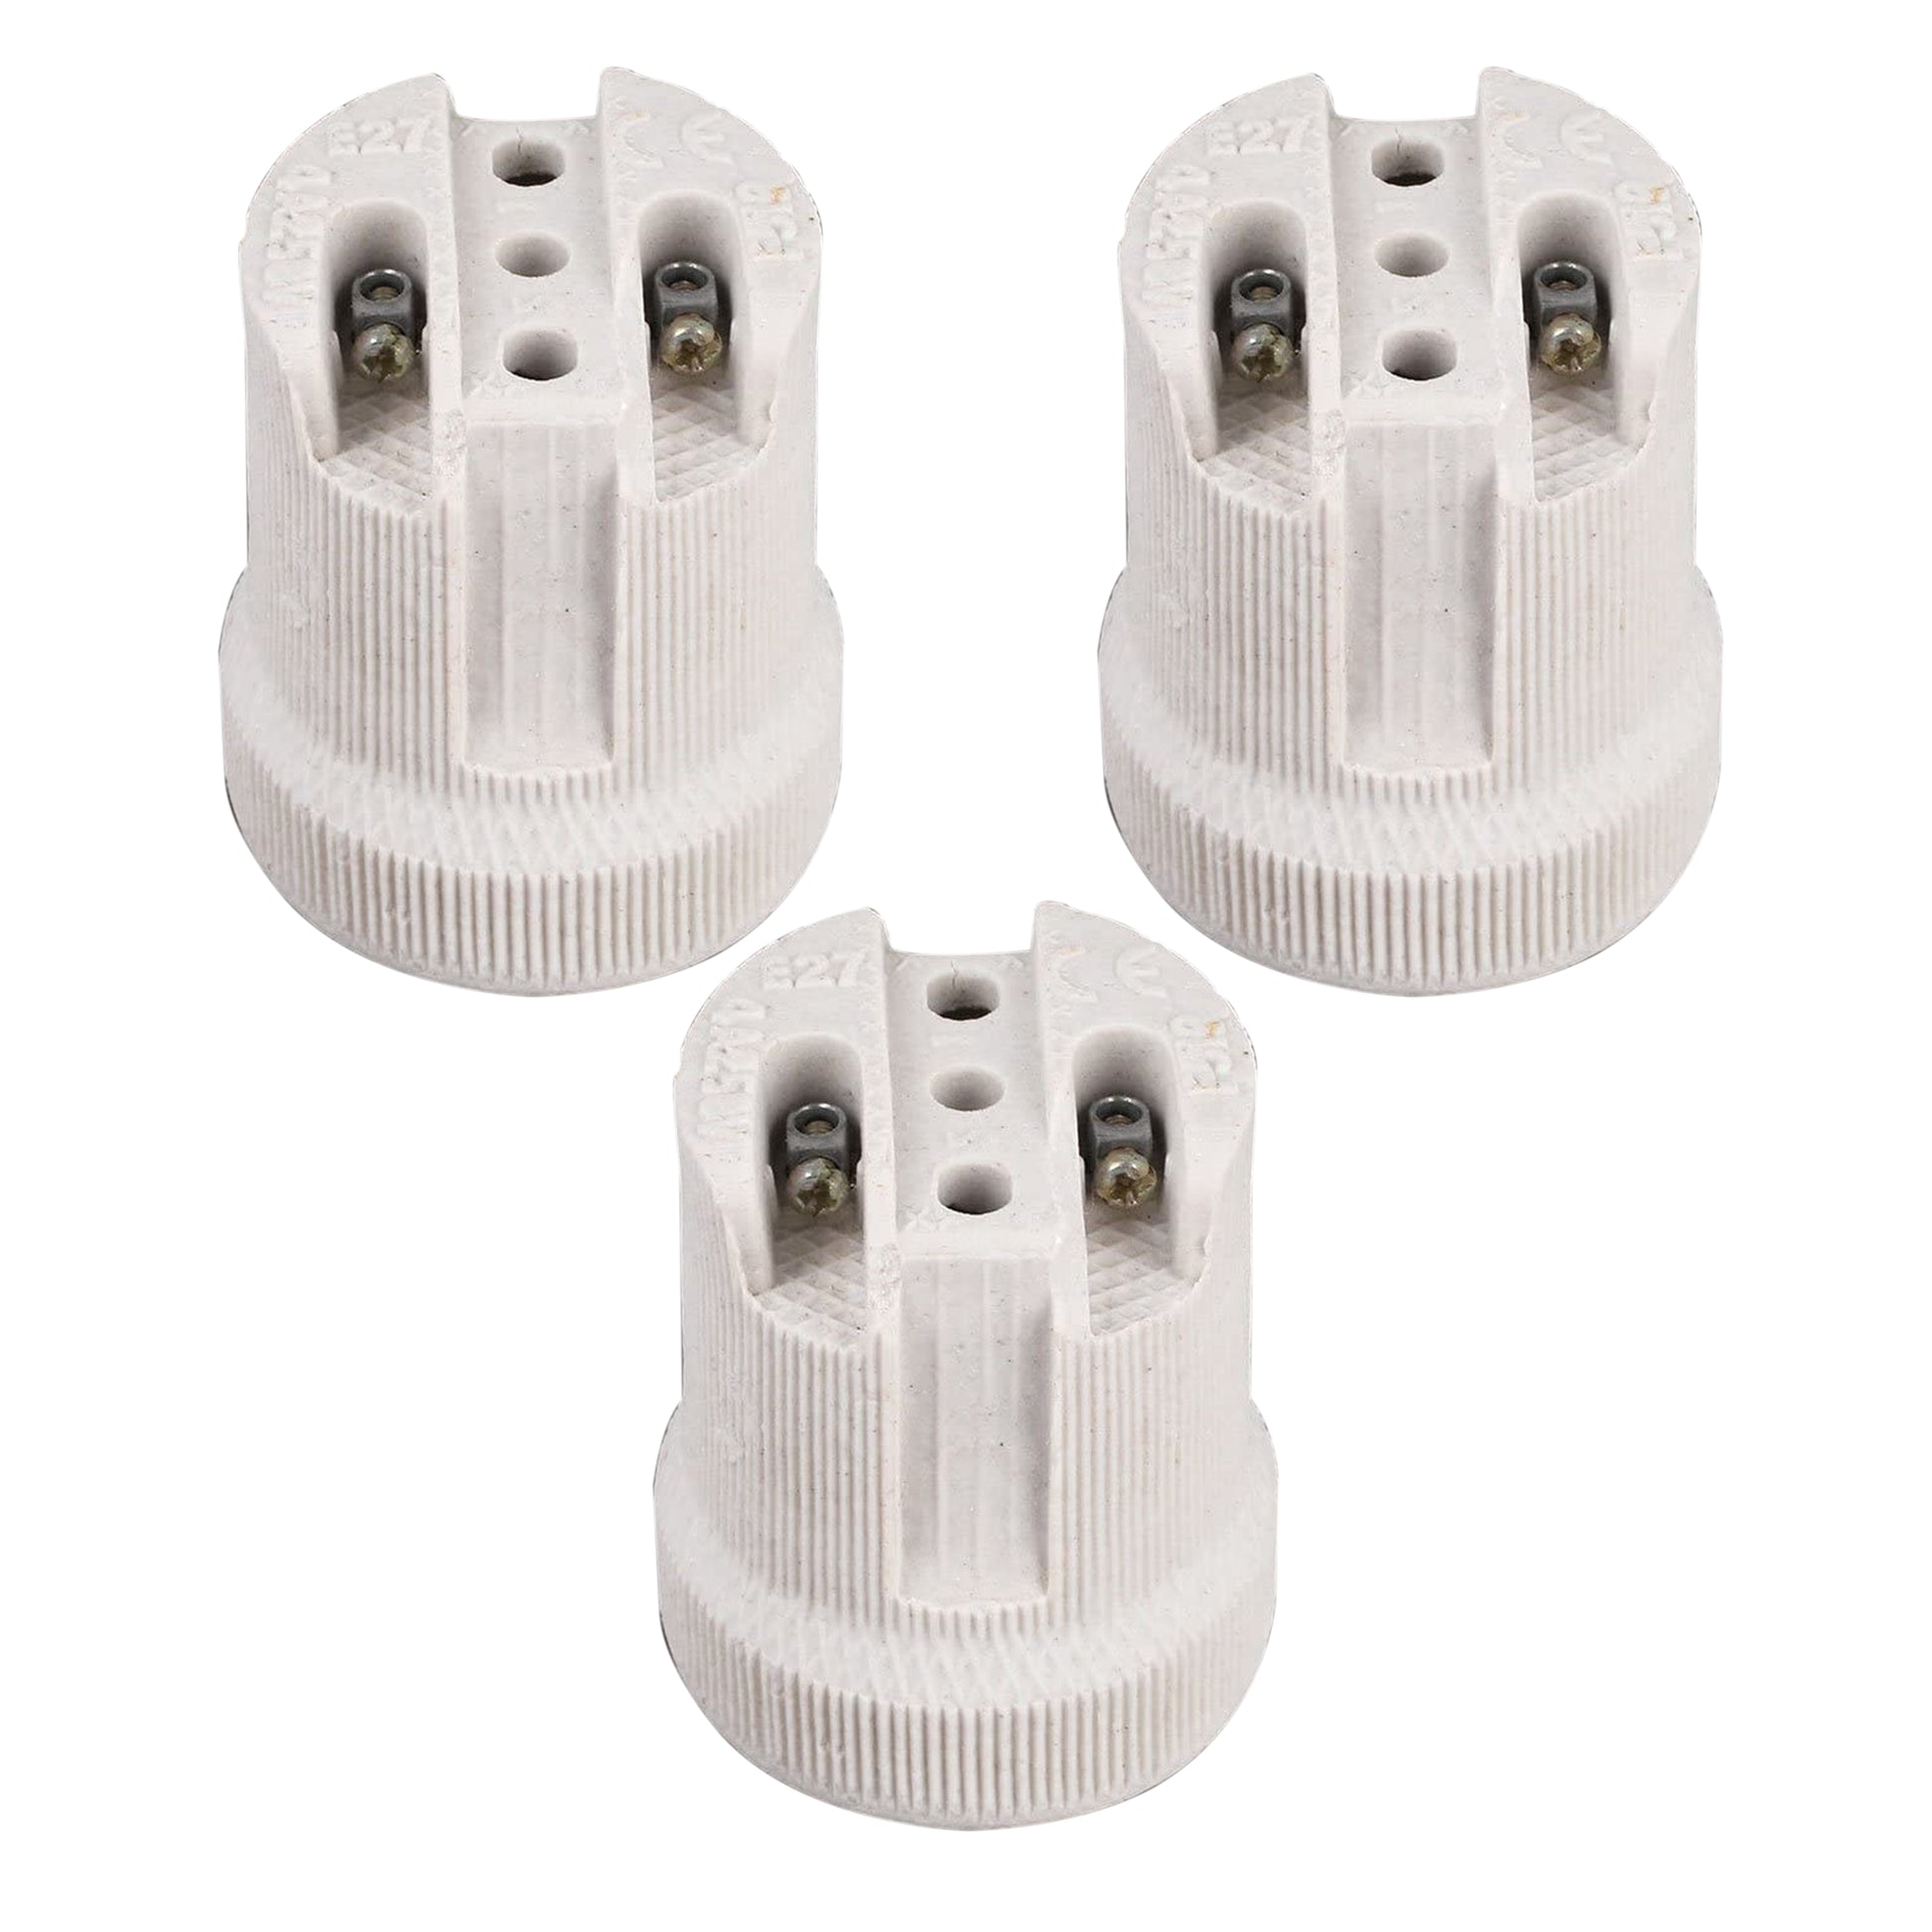 3 Pack E27 Bulb Holder Edison Screw White Ceramic Porcelain Lamp holder For Table Lamp E27 60W Plain Lamp holder Socket UK.